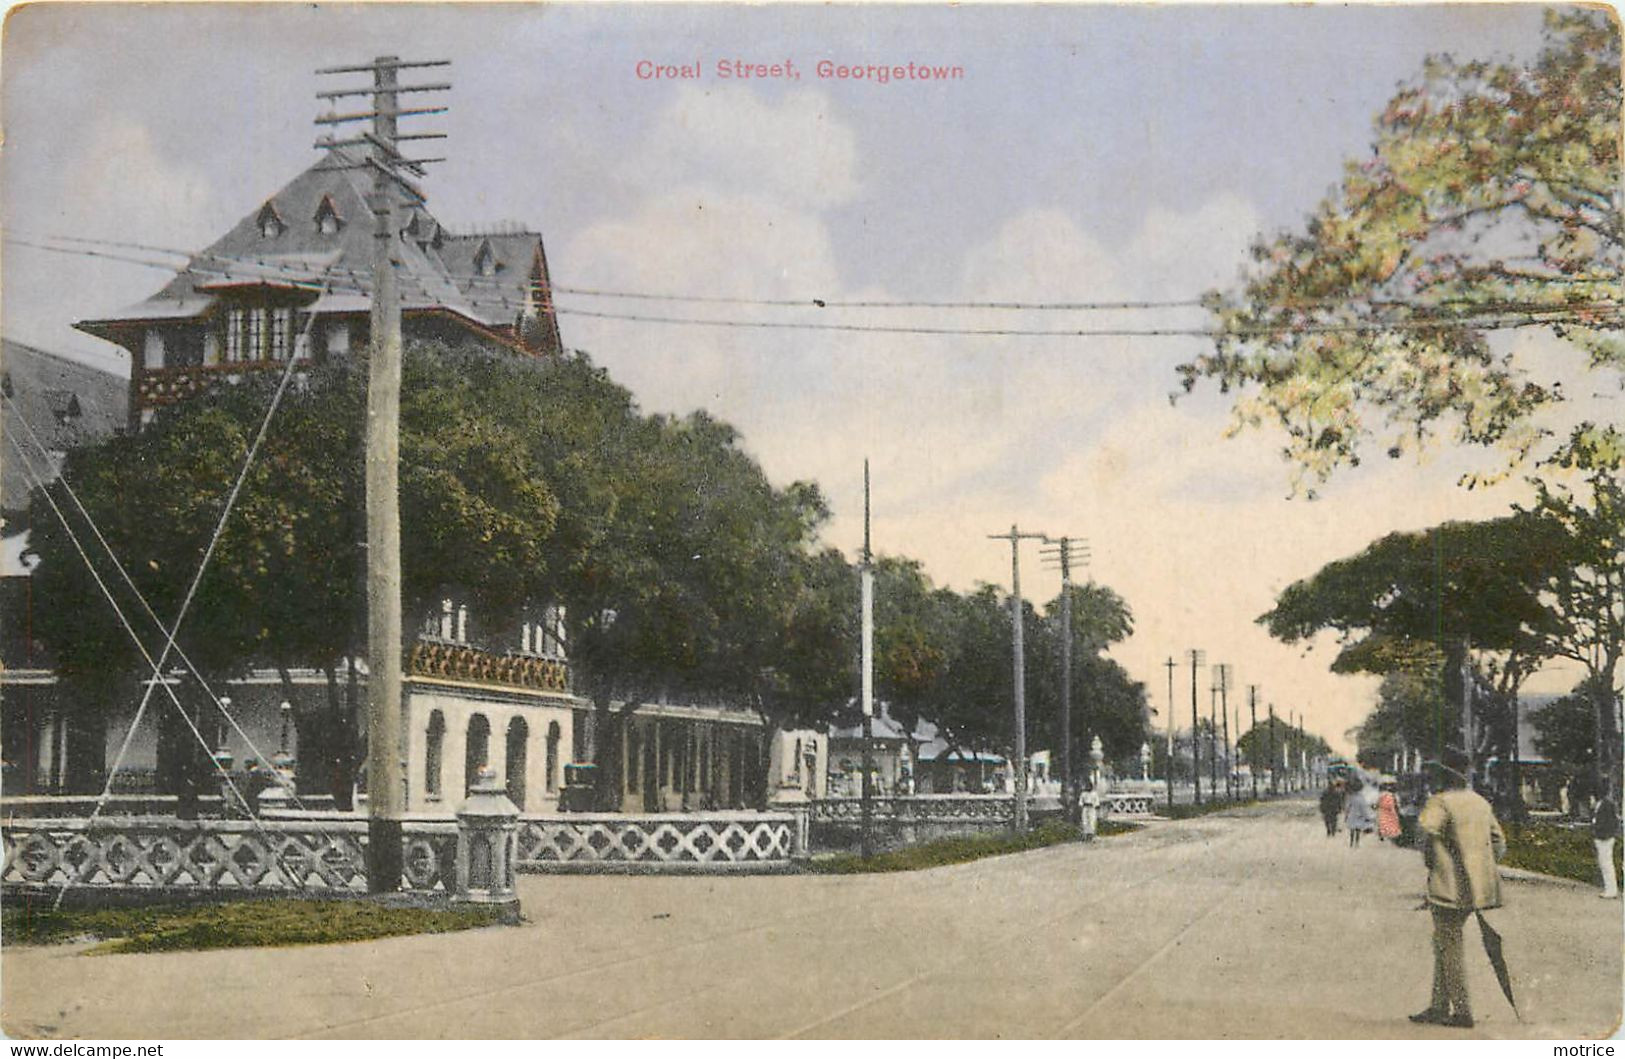 GEORGETOWN - Croal Street. - Guyana (voorheen Brits Guyana)